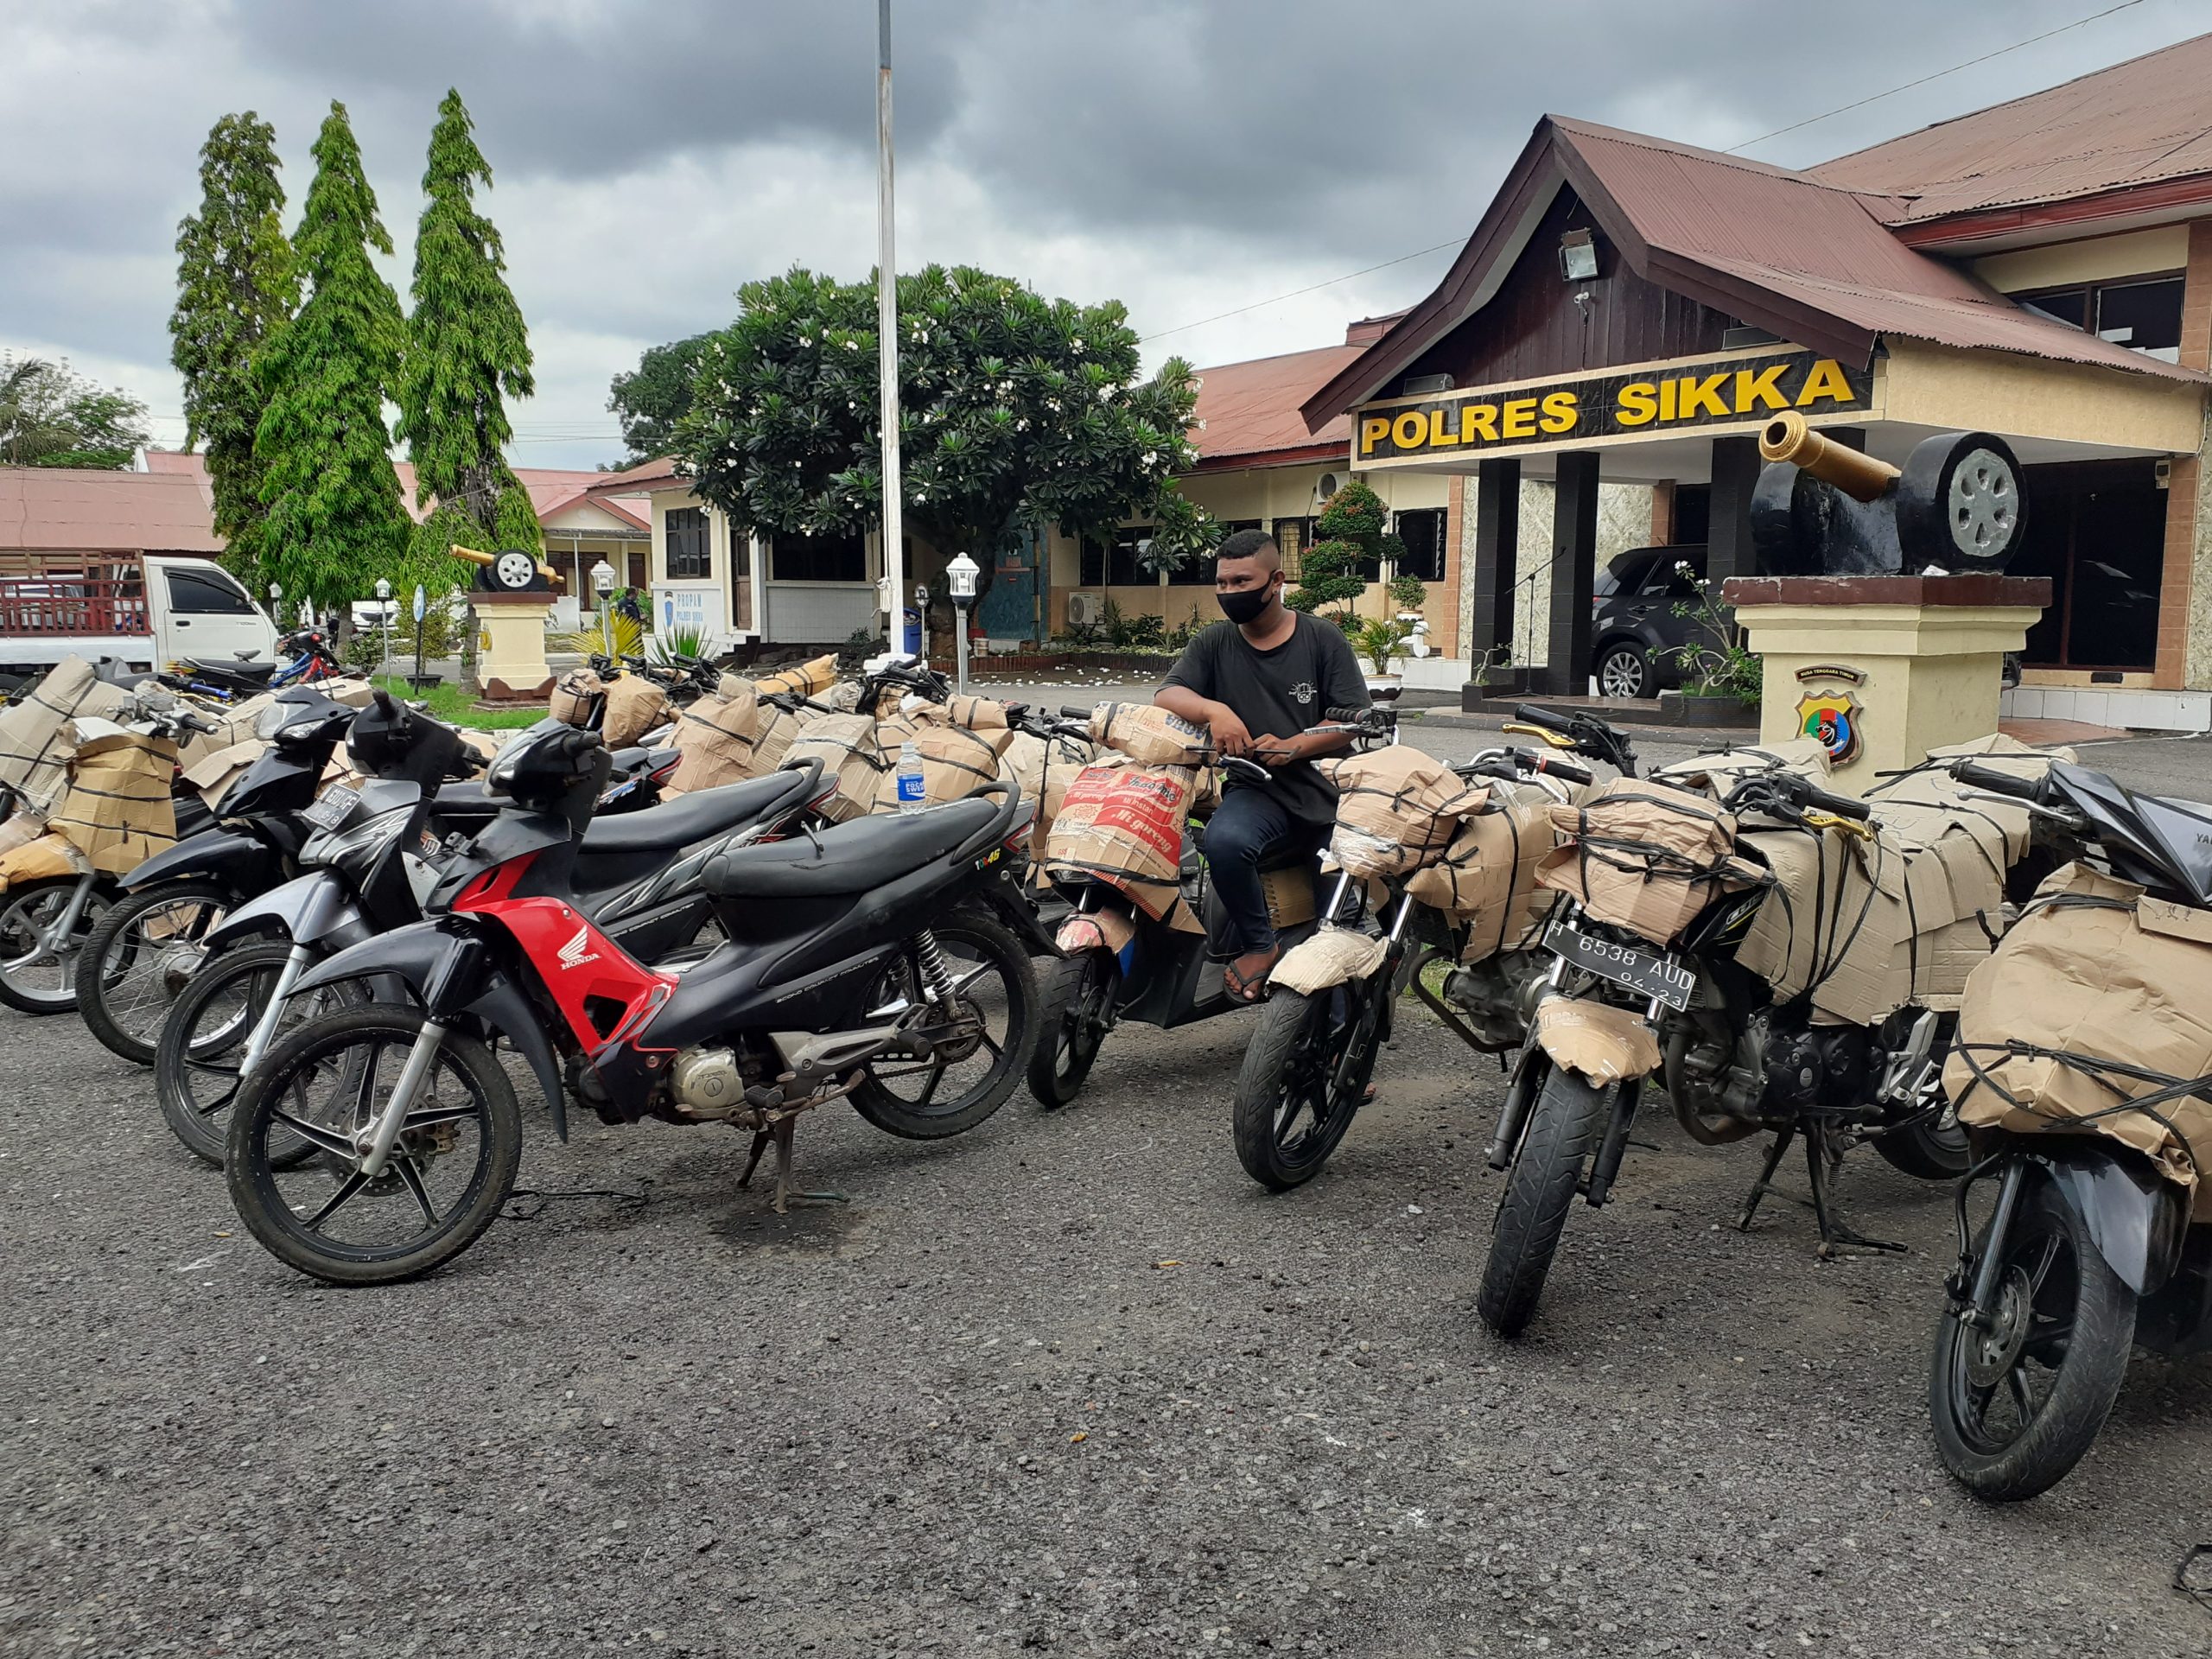 Sepeda motor bodong asal Solo Jawa Tengah yang diamankan Satlantas Polres Sikka NTT. Foto: Lintasnusanews.com/Karel Pandu